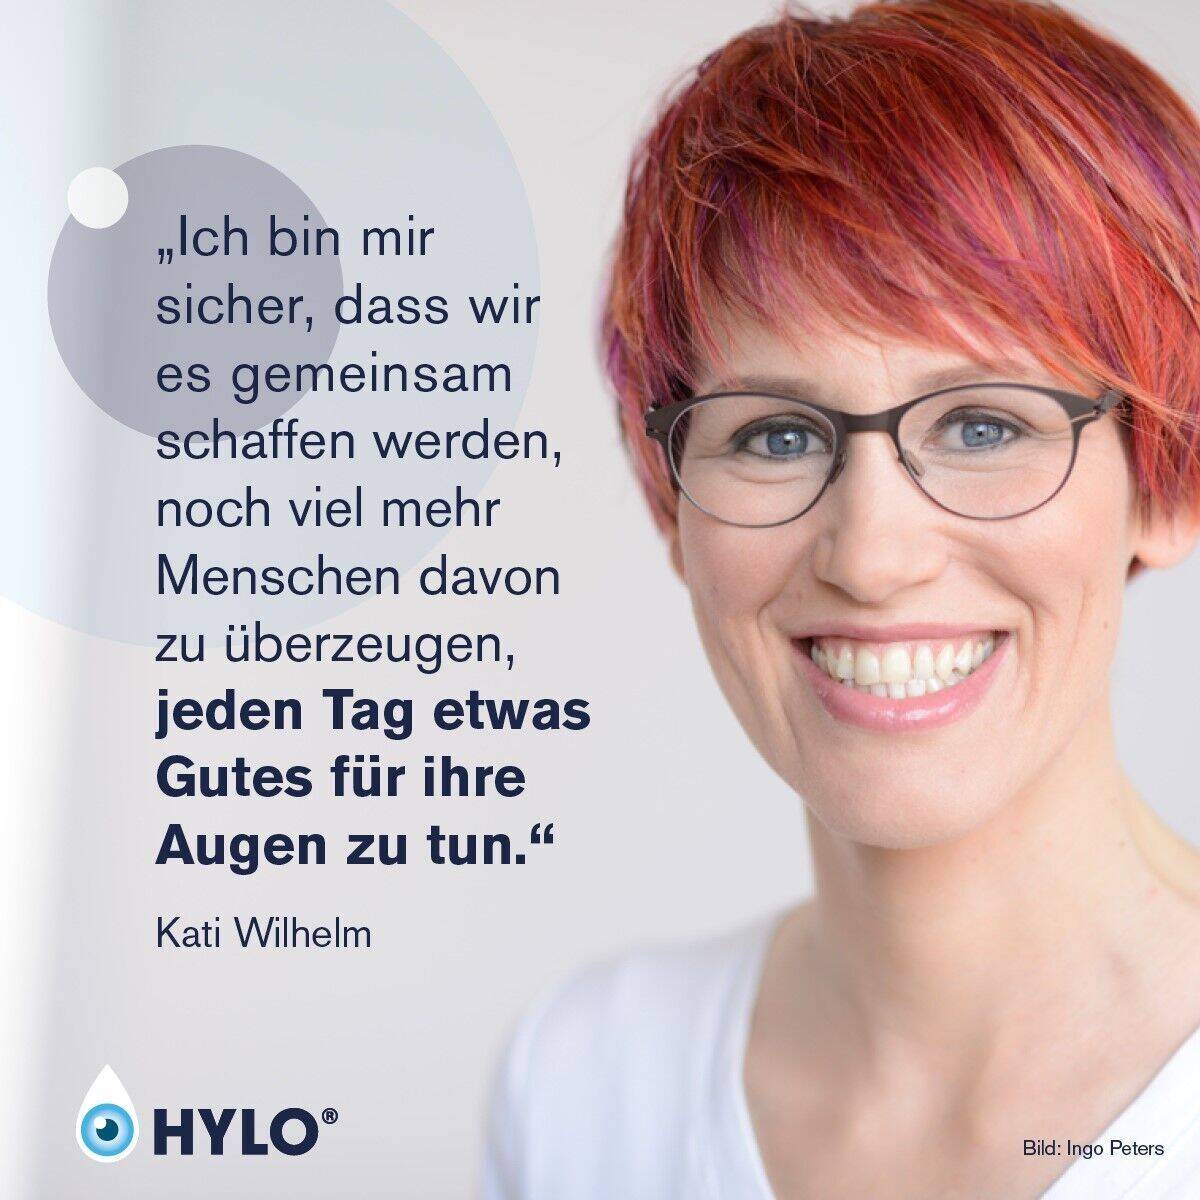 Kati Wilhelm wirbt für Augengesundheit.